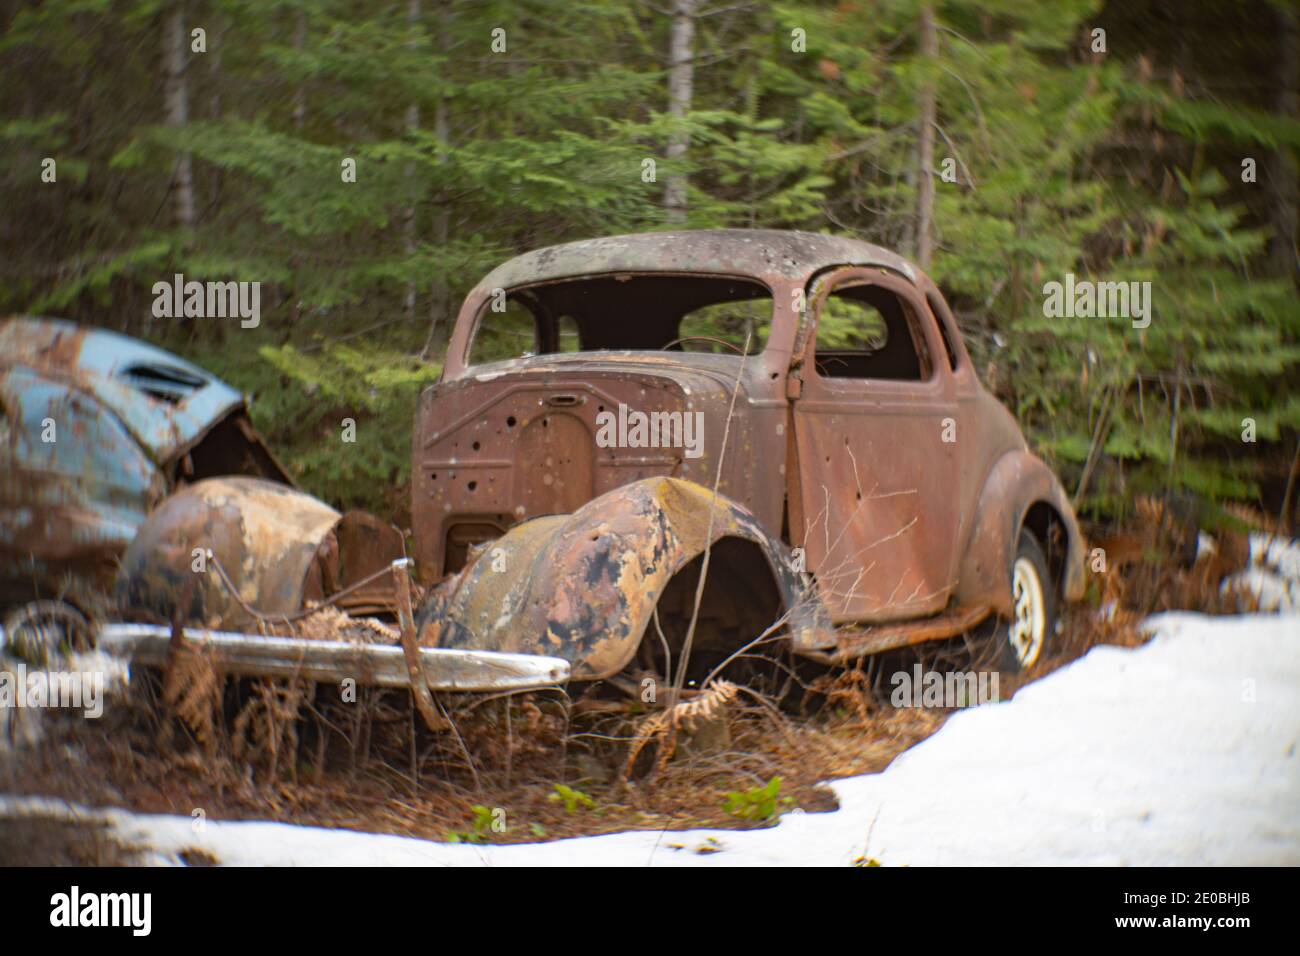 Un oxidado Chevrolet 1937 2 puertas Coupé, en una zona boscosa, en Noxon, Montana esta imagen fue tomada con una antigua lente Petzval y mostrará signos de dis Foto de stock